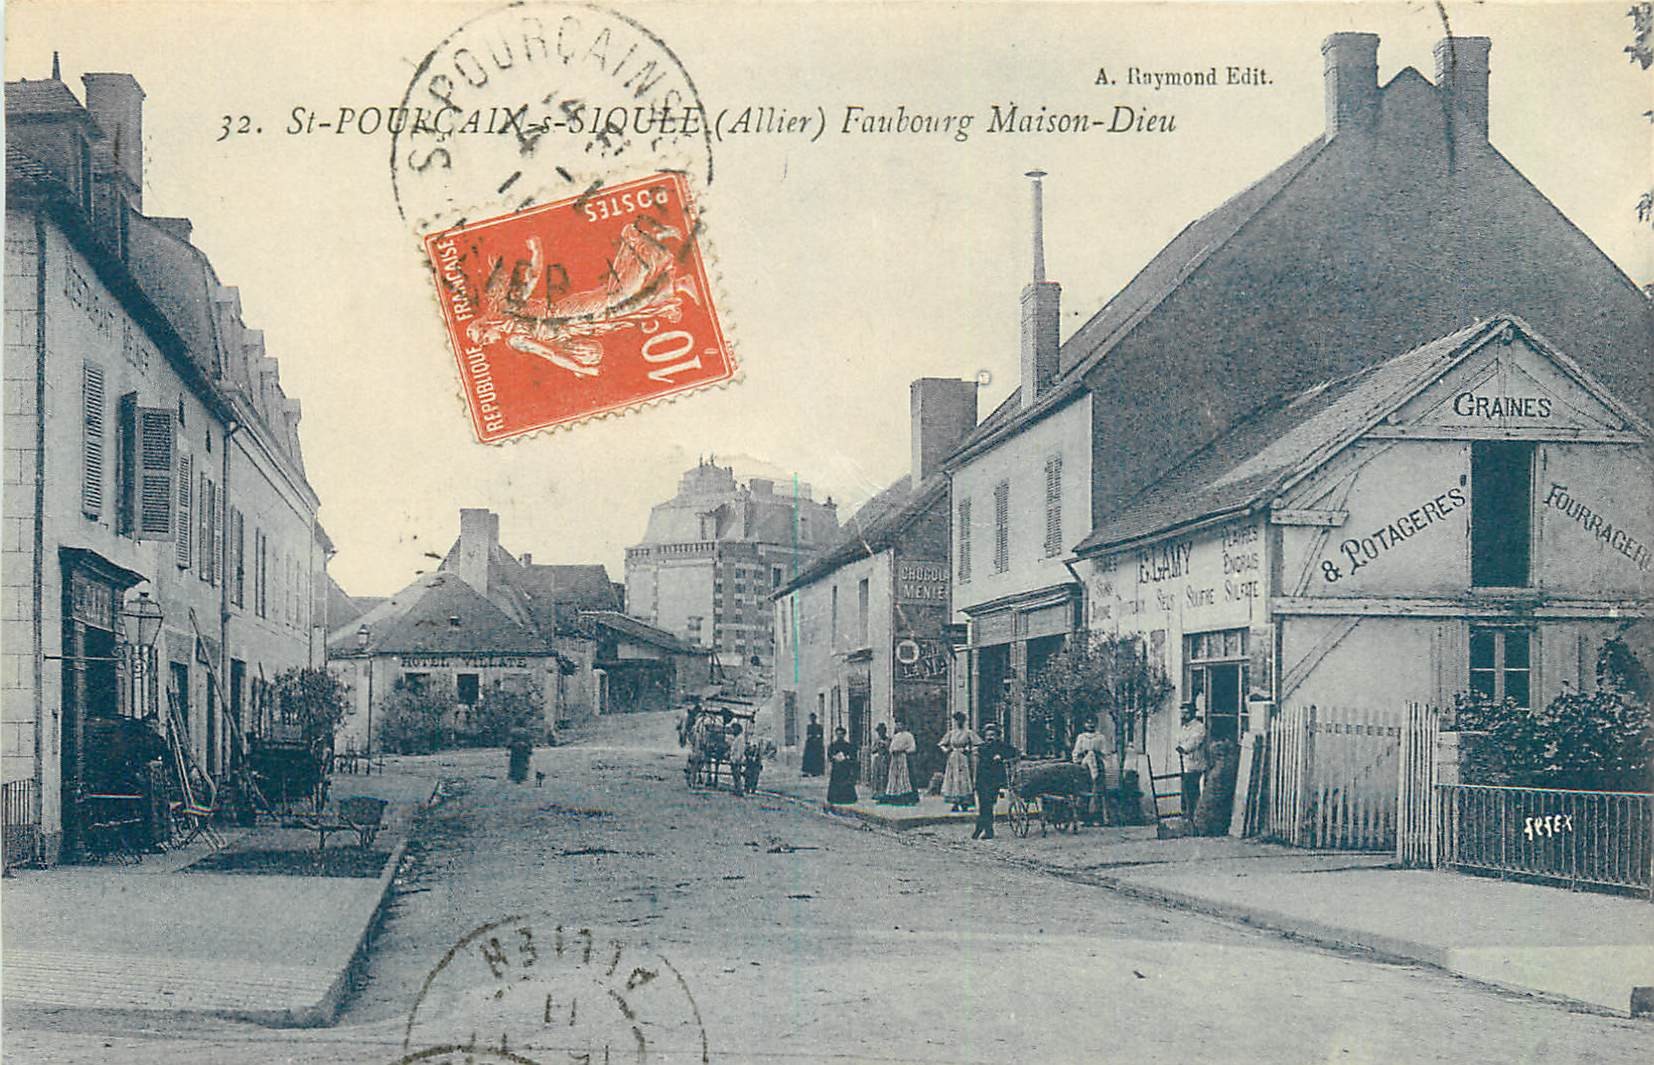 WW 03 SAINT-POURCAIN-SUR-SIOULE. Potagerie Lamy Faubourg Maison-Dieu 1911